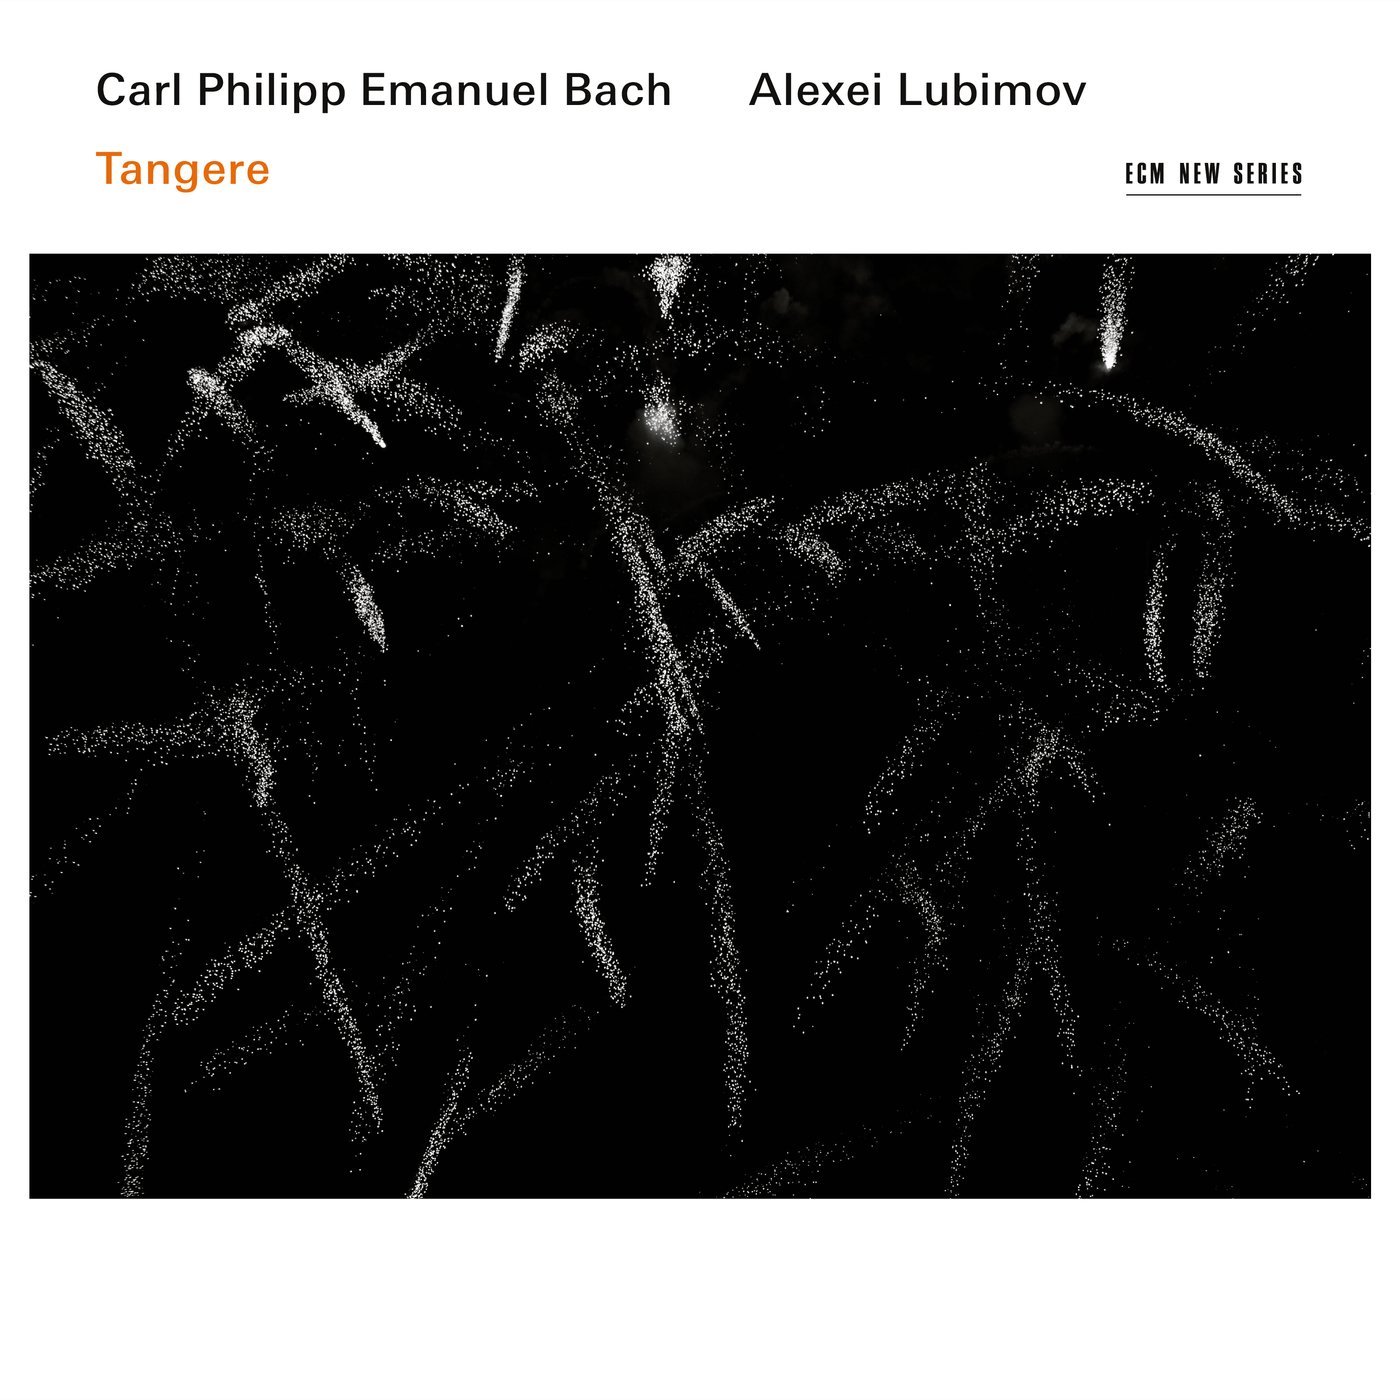 Lubimov's CPE Bach